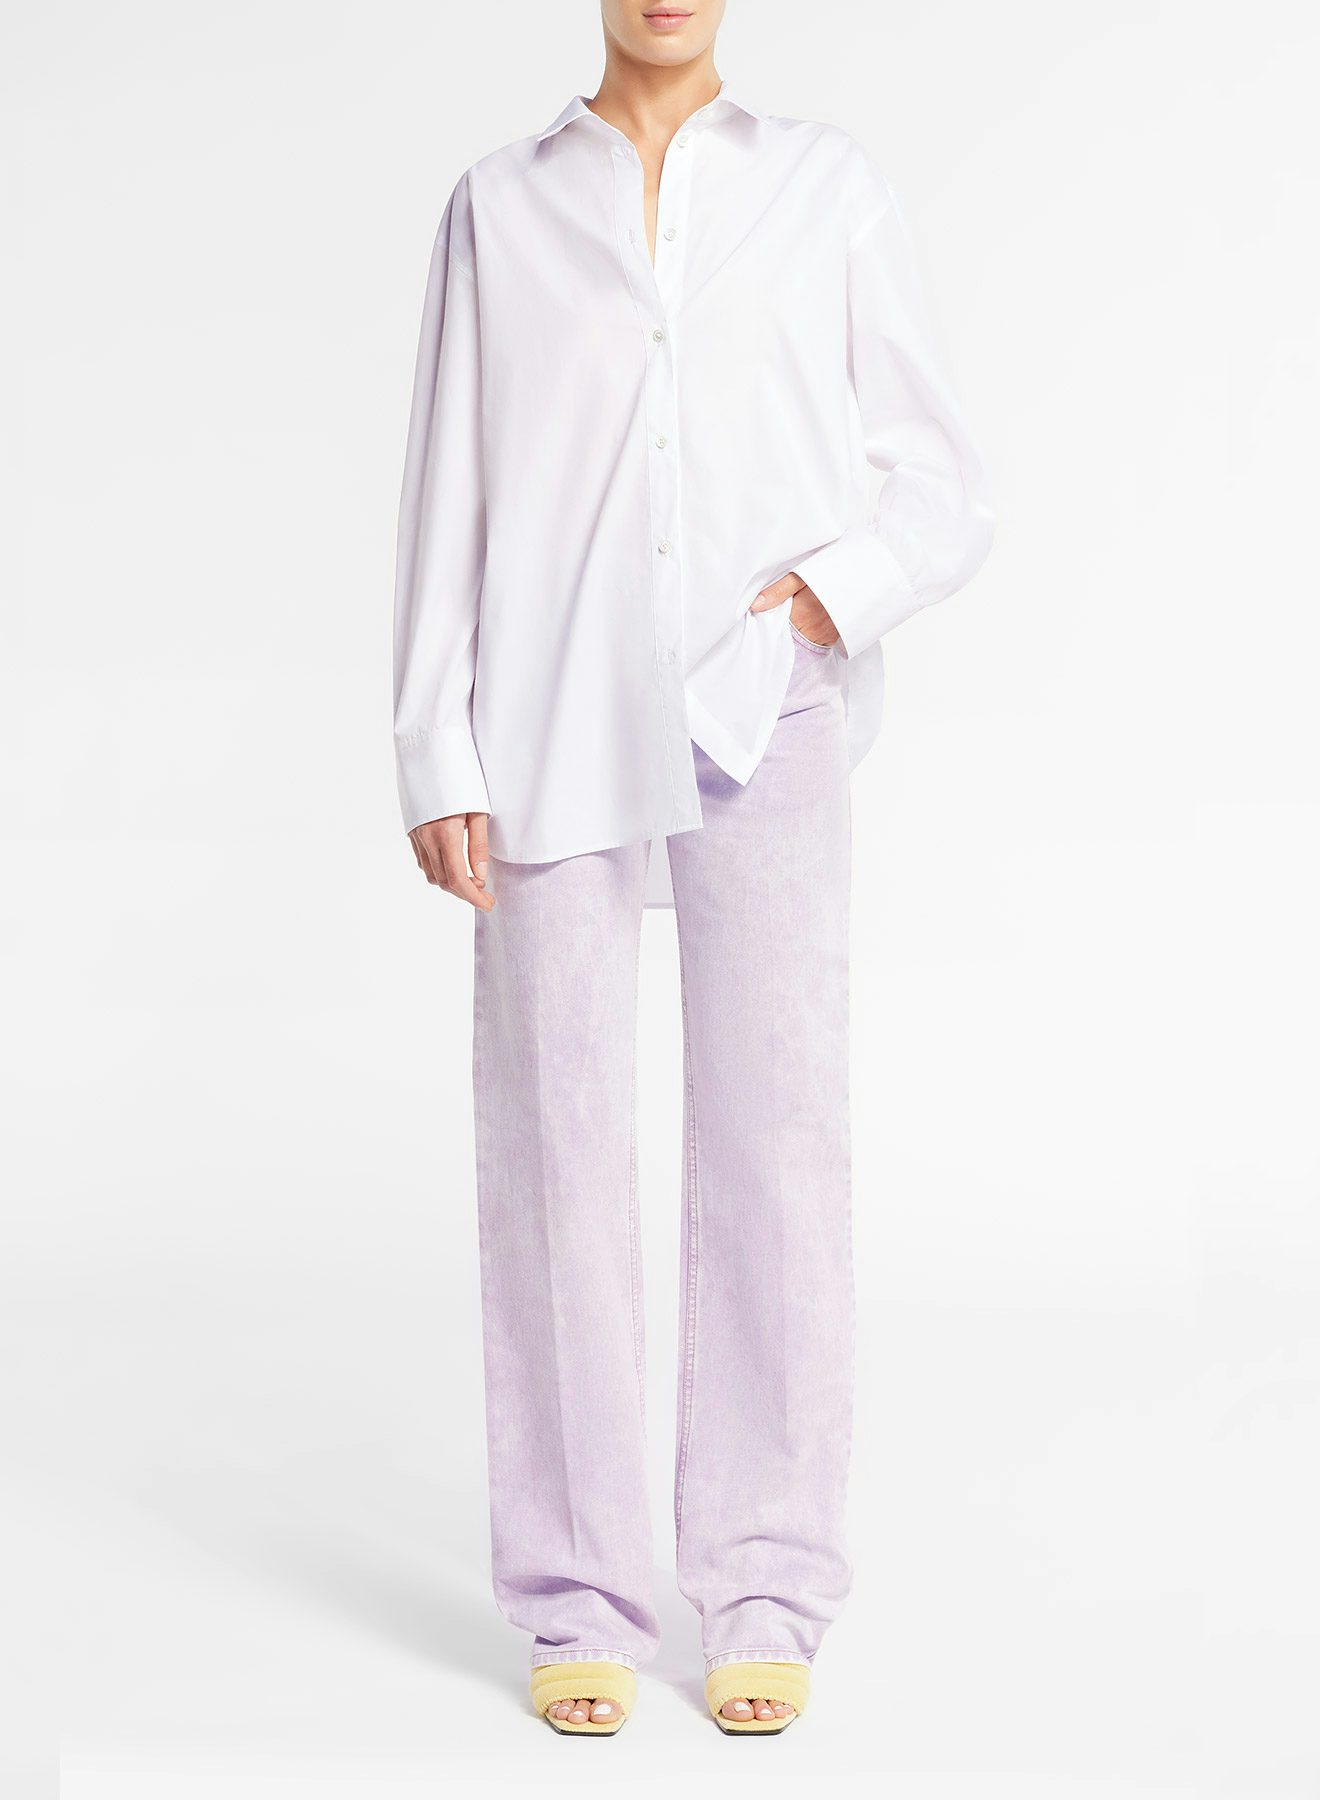 Camisa efecto arrugado blanca y gris marengo con bordado contrastado Nina Ricci en la espalda - Nina Ricci